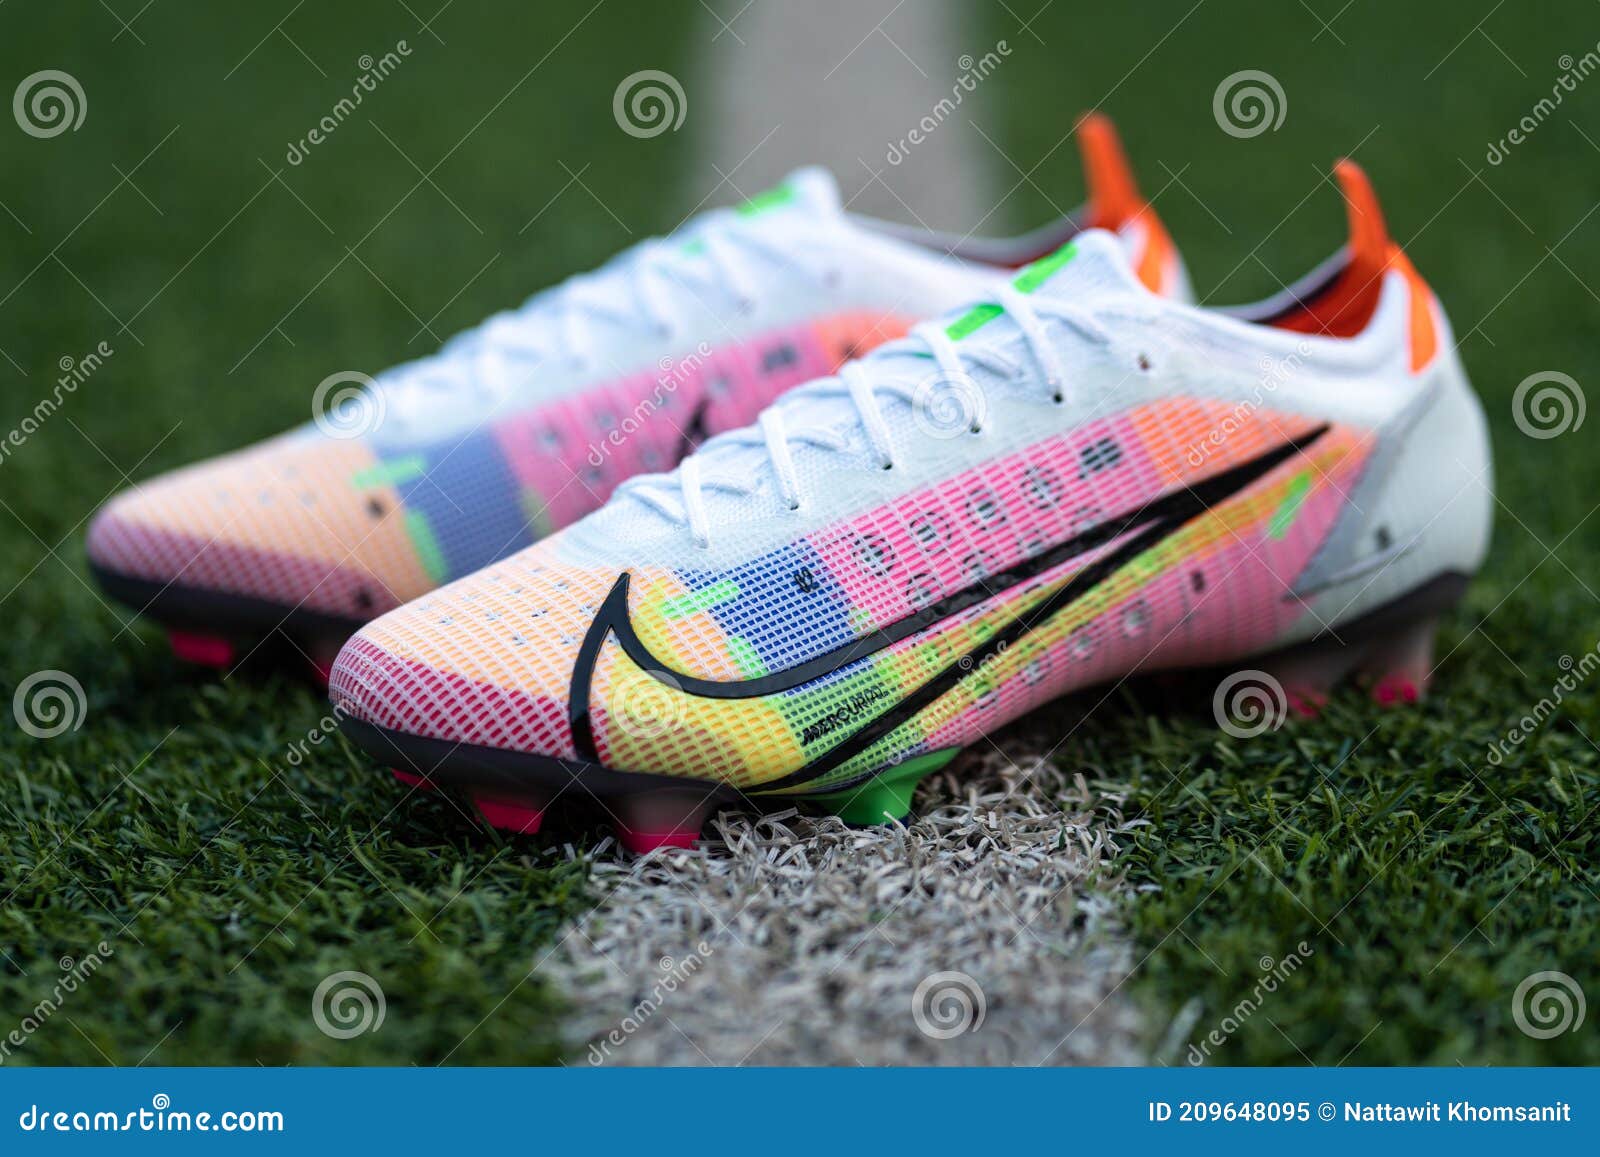 Nike Mercurial Vapor 14 Nuevo Zapato De Futbol Nike. Imagen editorial -  Imagen de objeto, lanzamiento: 209648095